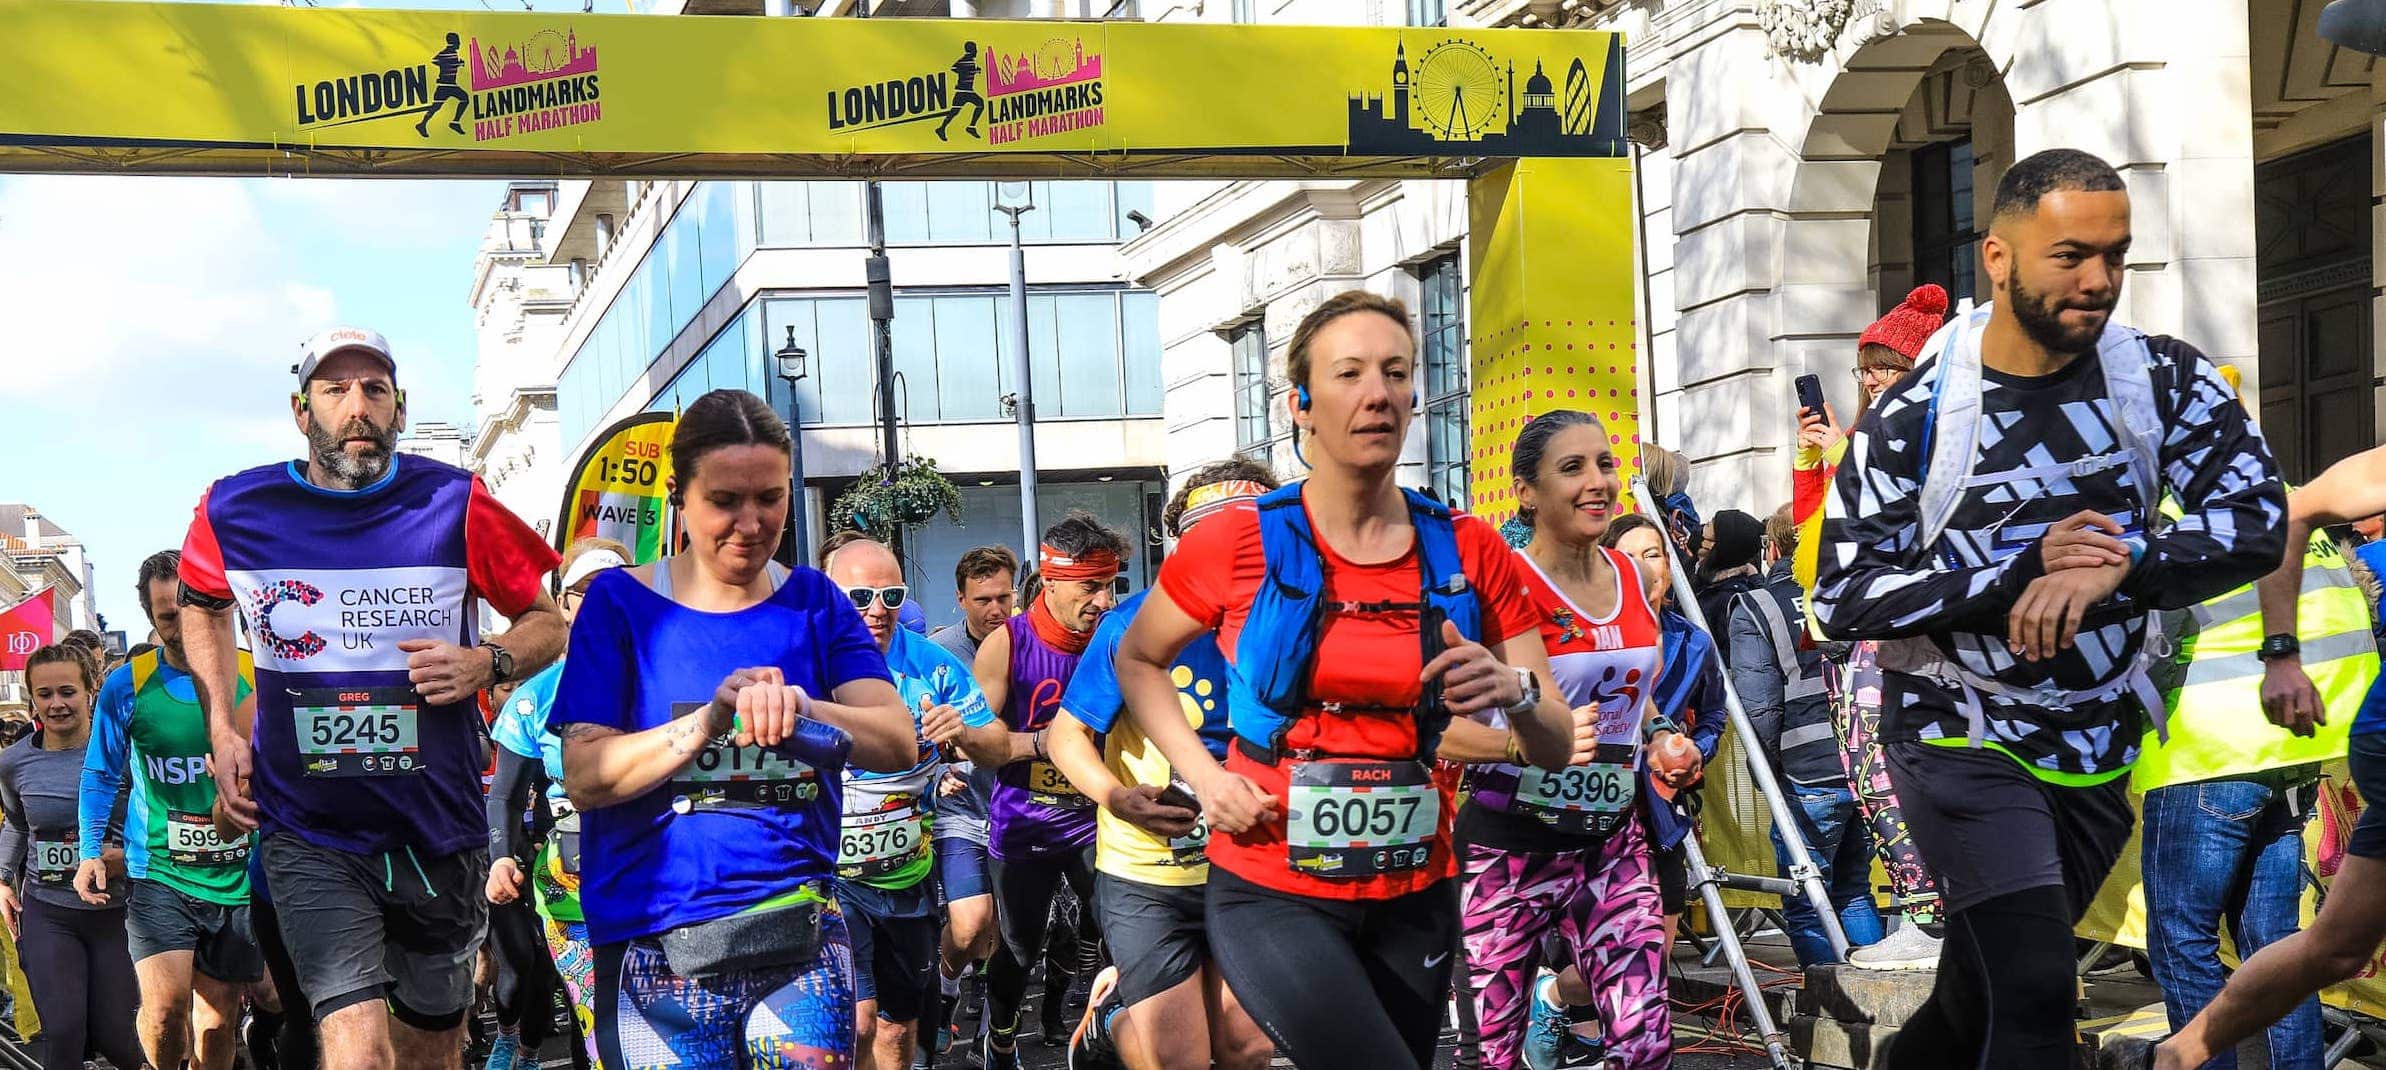 London landmarks race goers half marathon